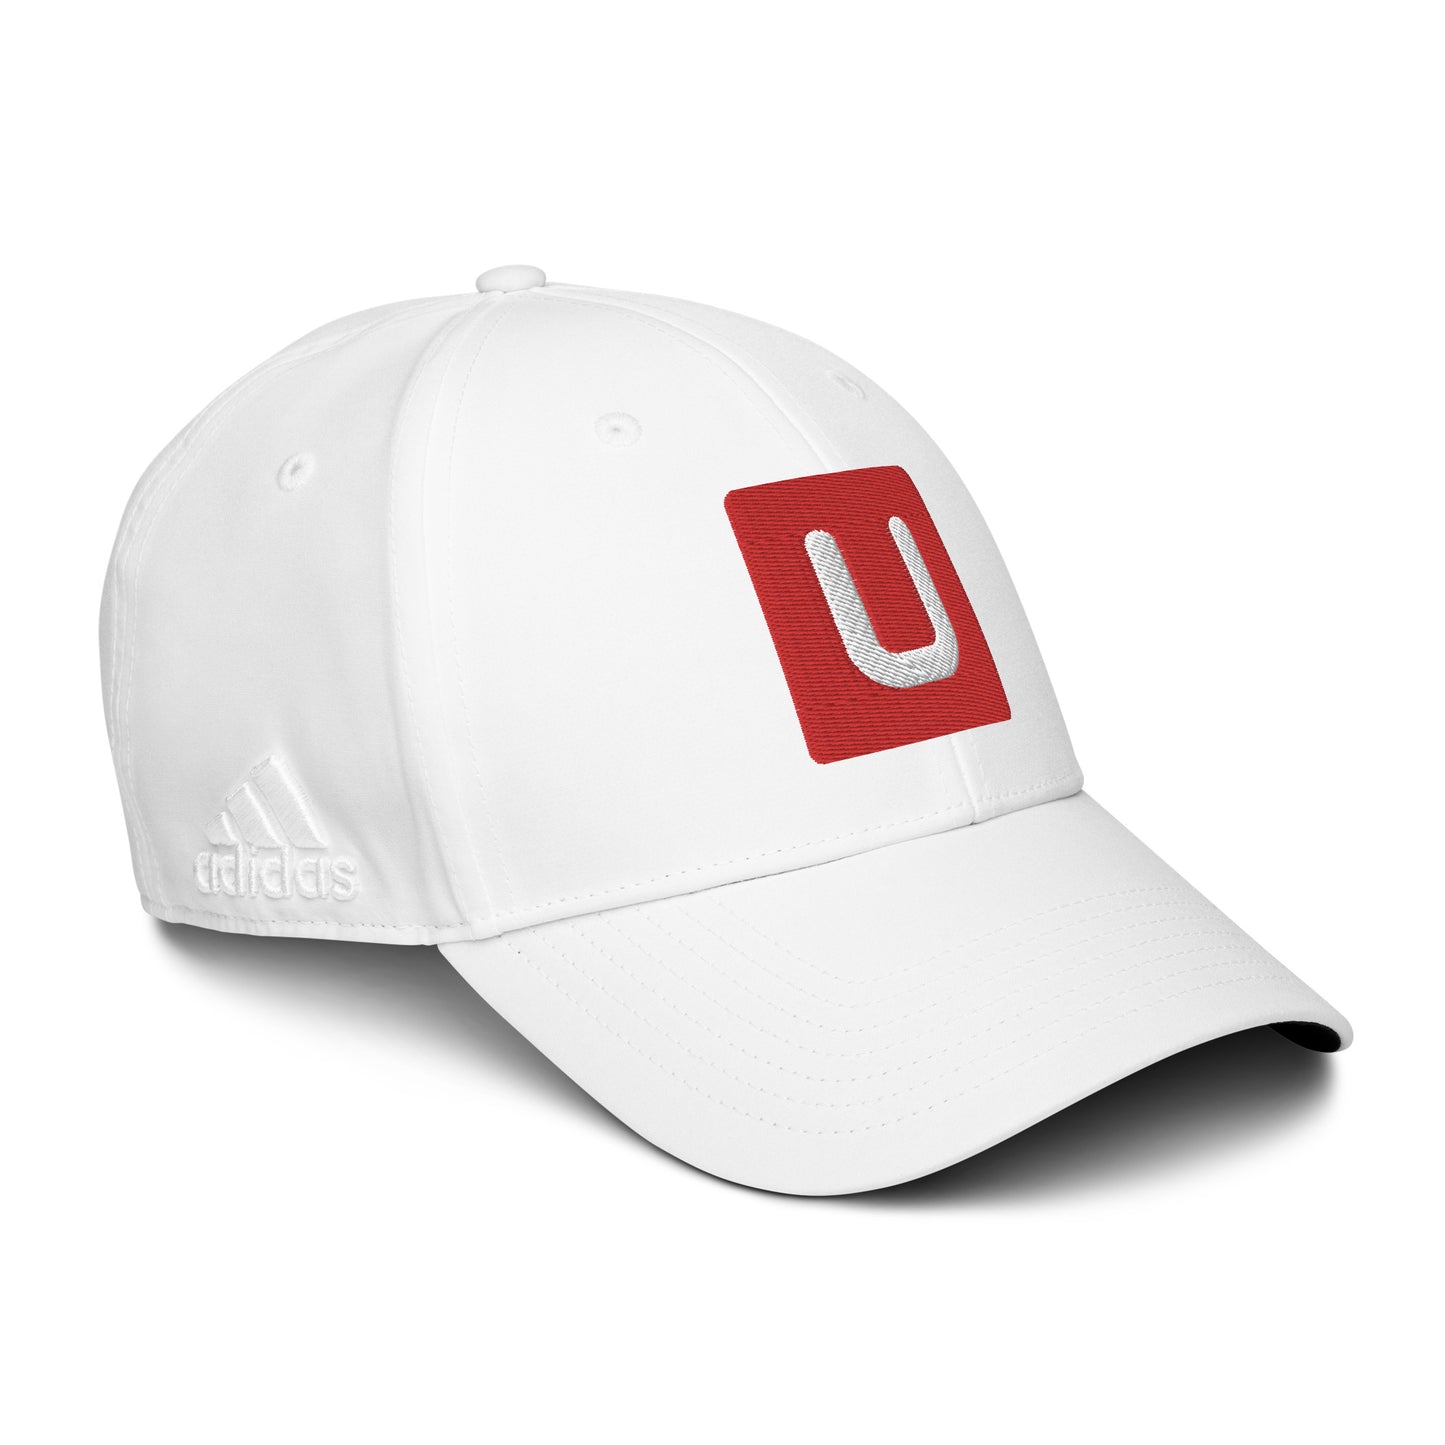 UwUFUFU Logo adidas dad hat